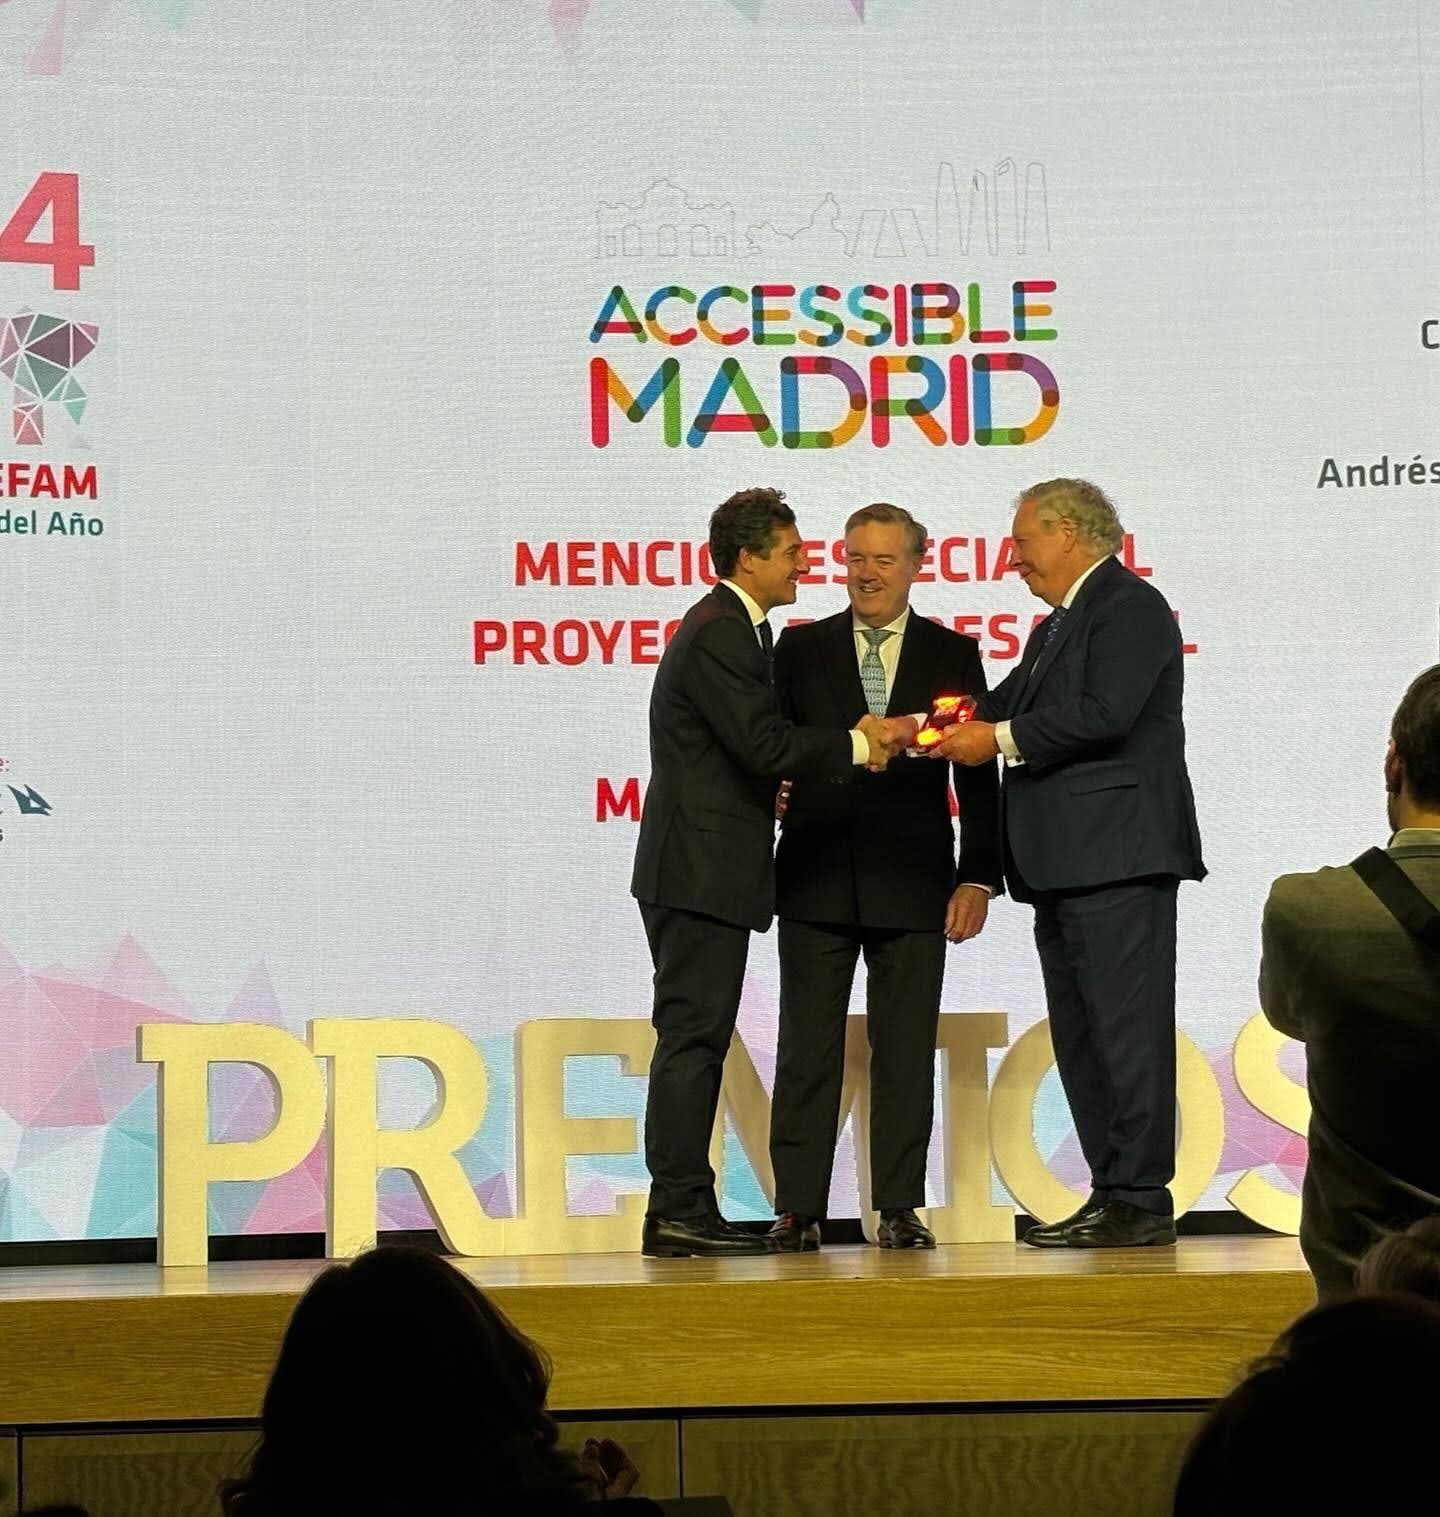 ADEFAM premia a Accessible Madrid como proyecto empresarial madrileño más innovador 